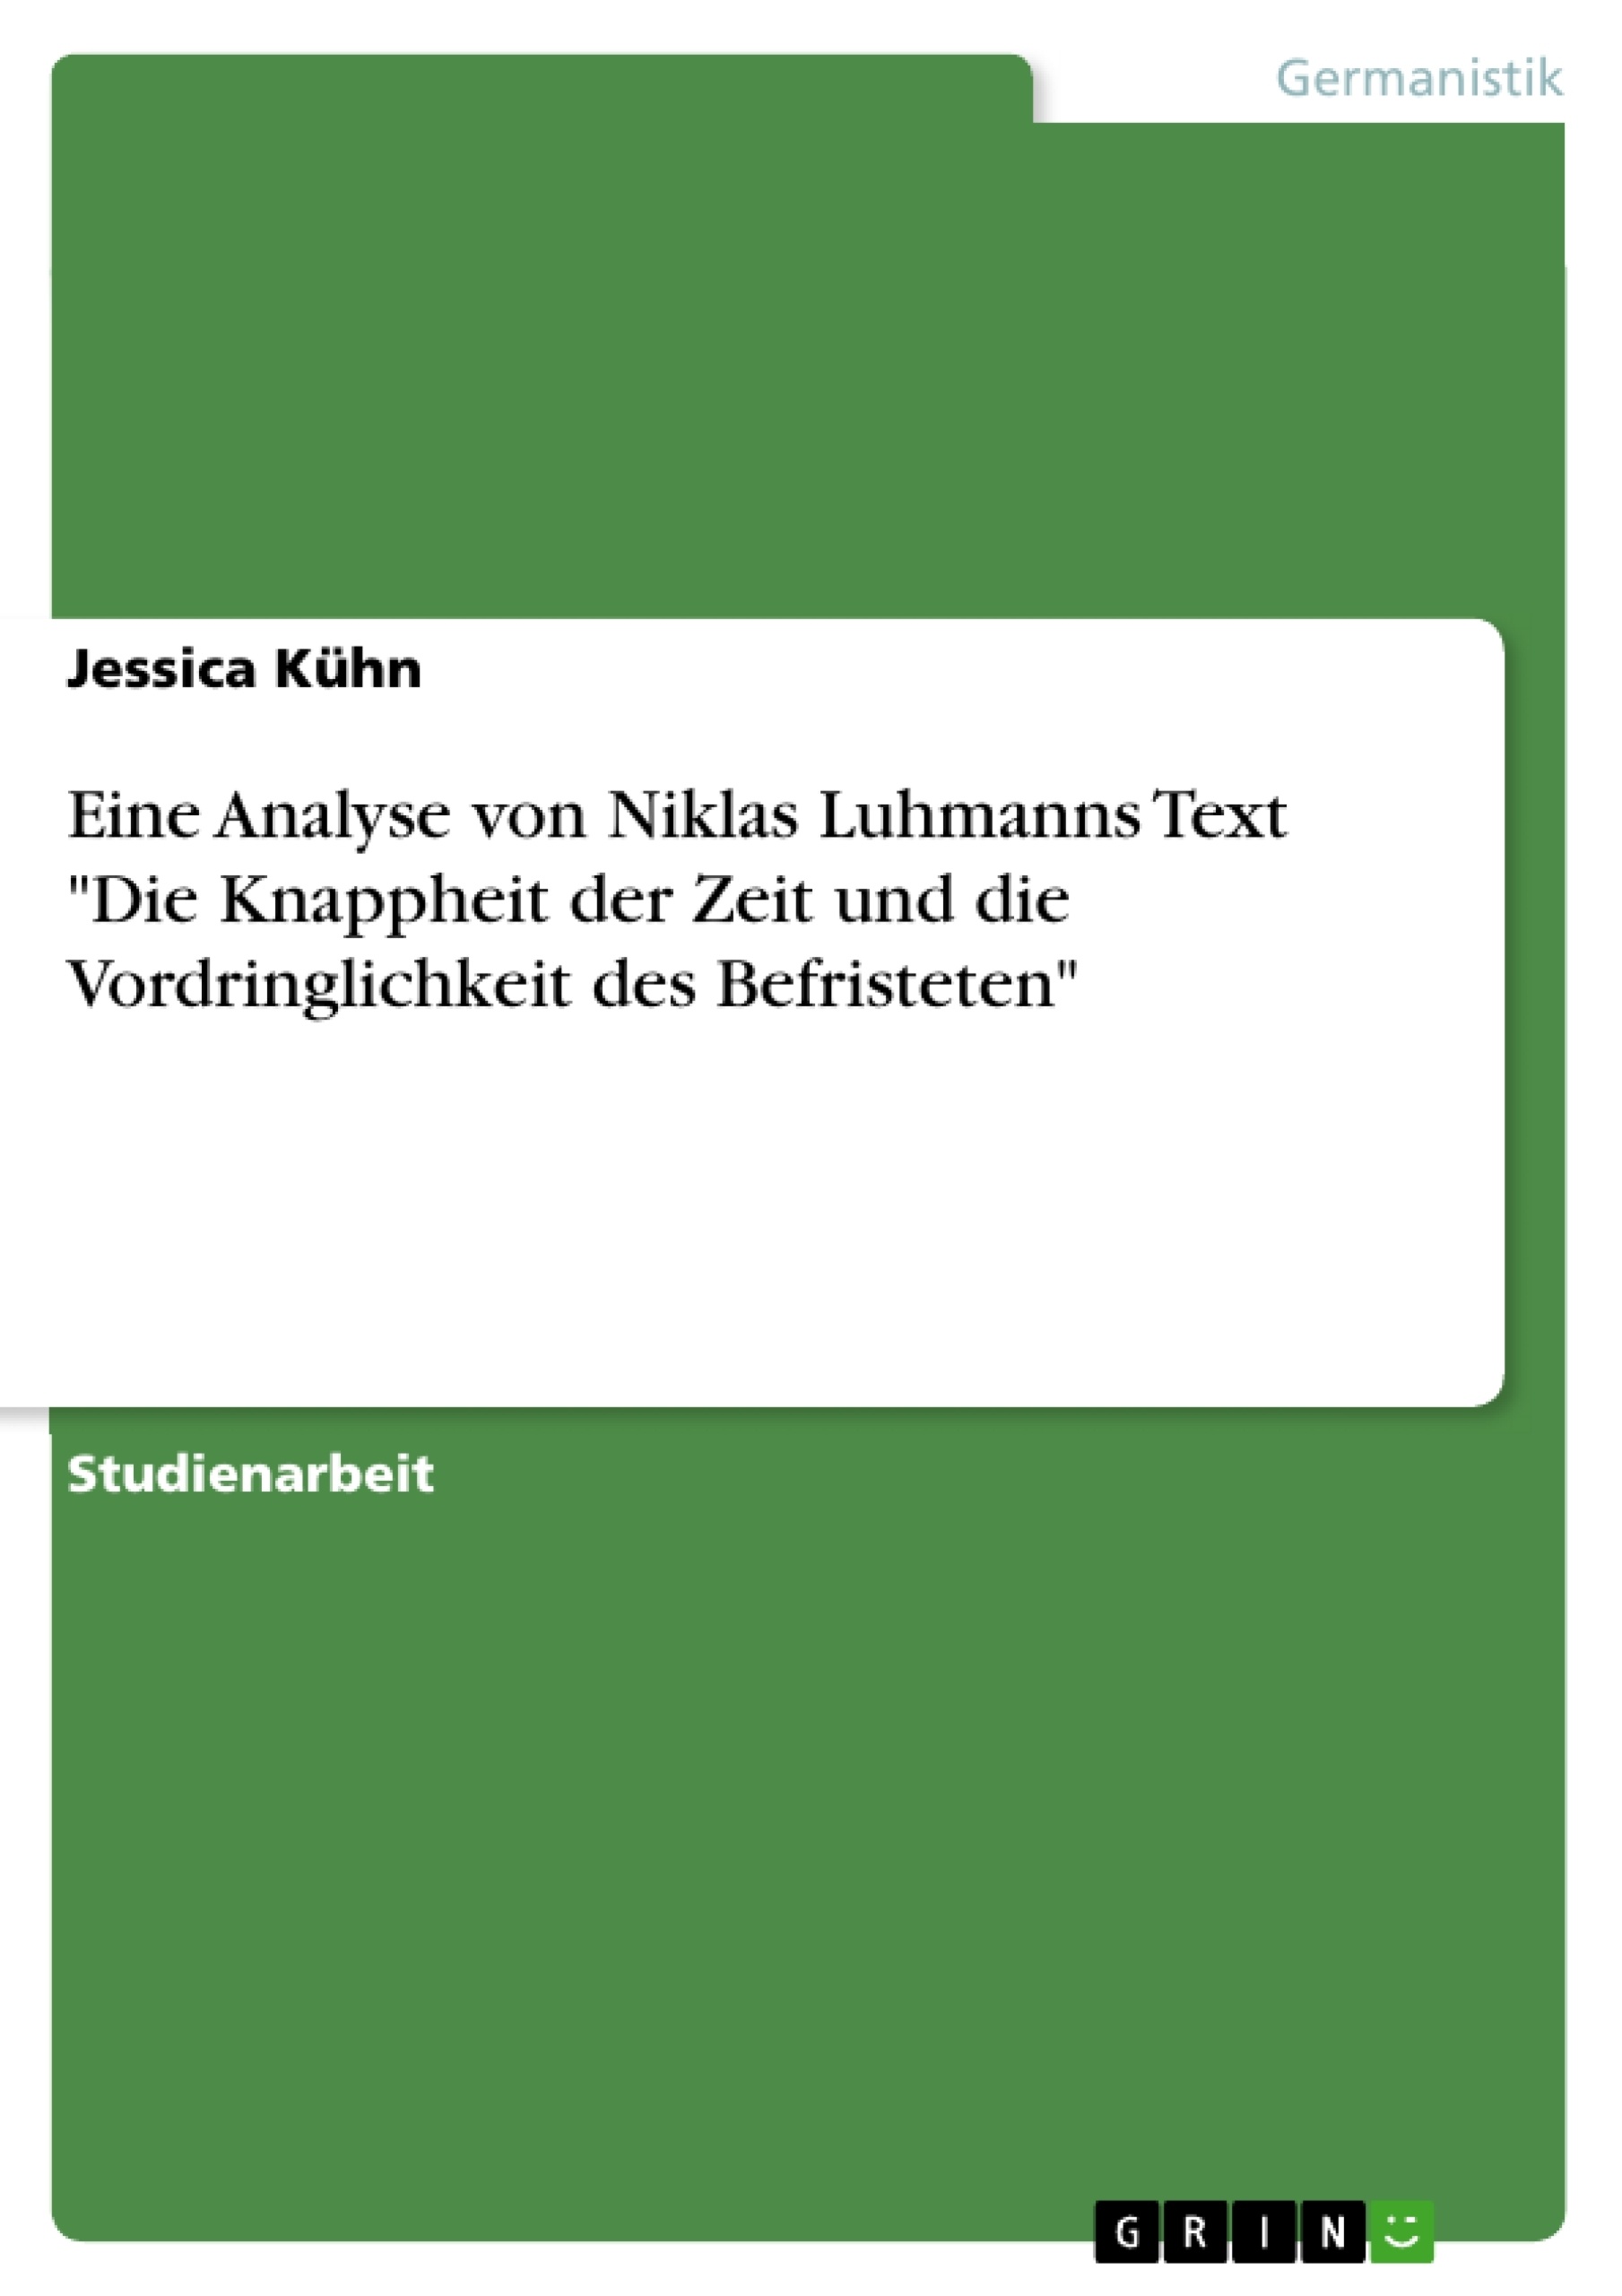 Title: Eine Analyse von Niklas Luhmanns Text "Die Knappheit der Zeit und die Vordringlichkeit des Befristeten"